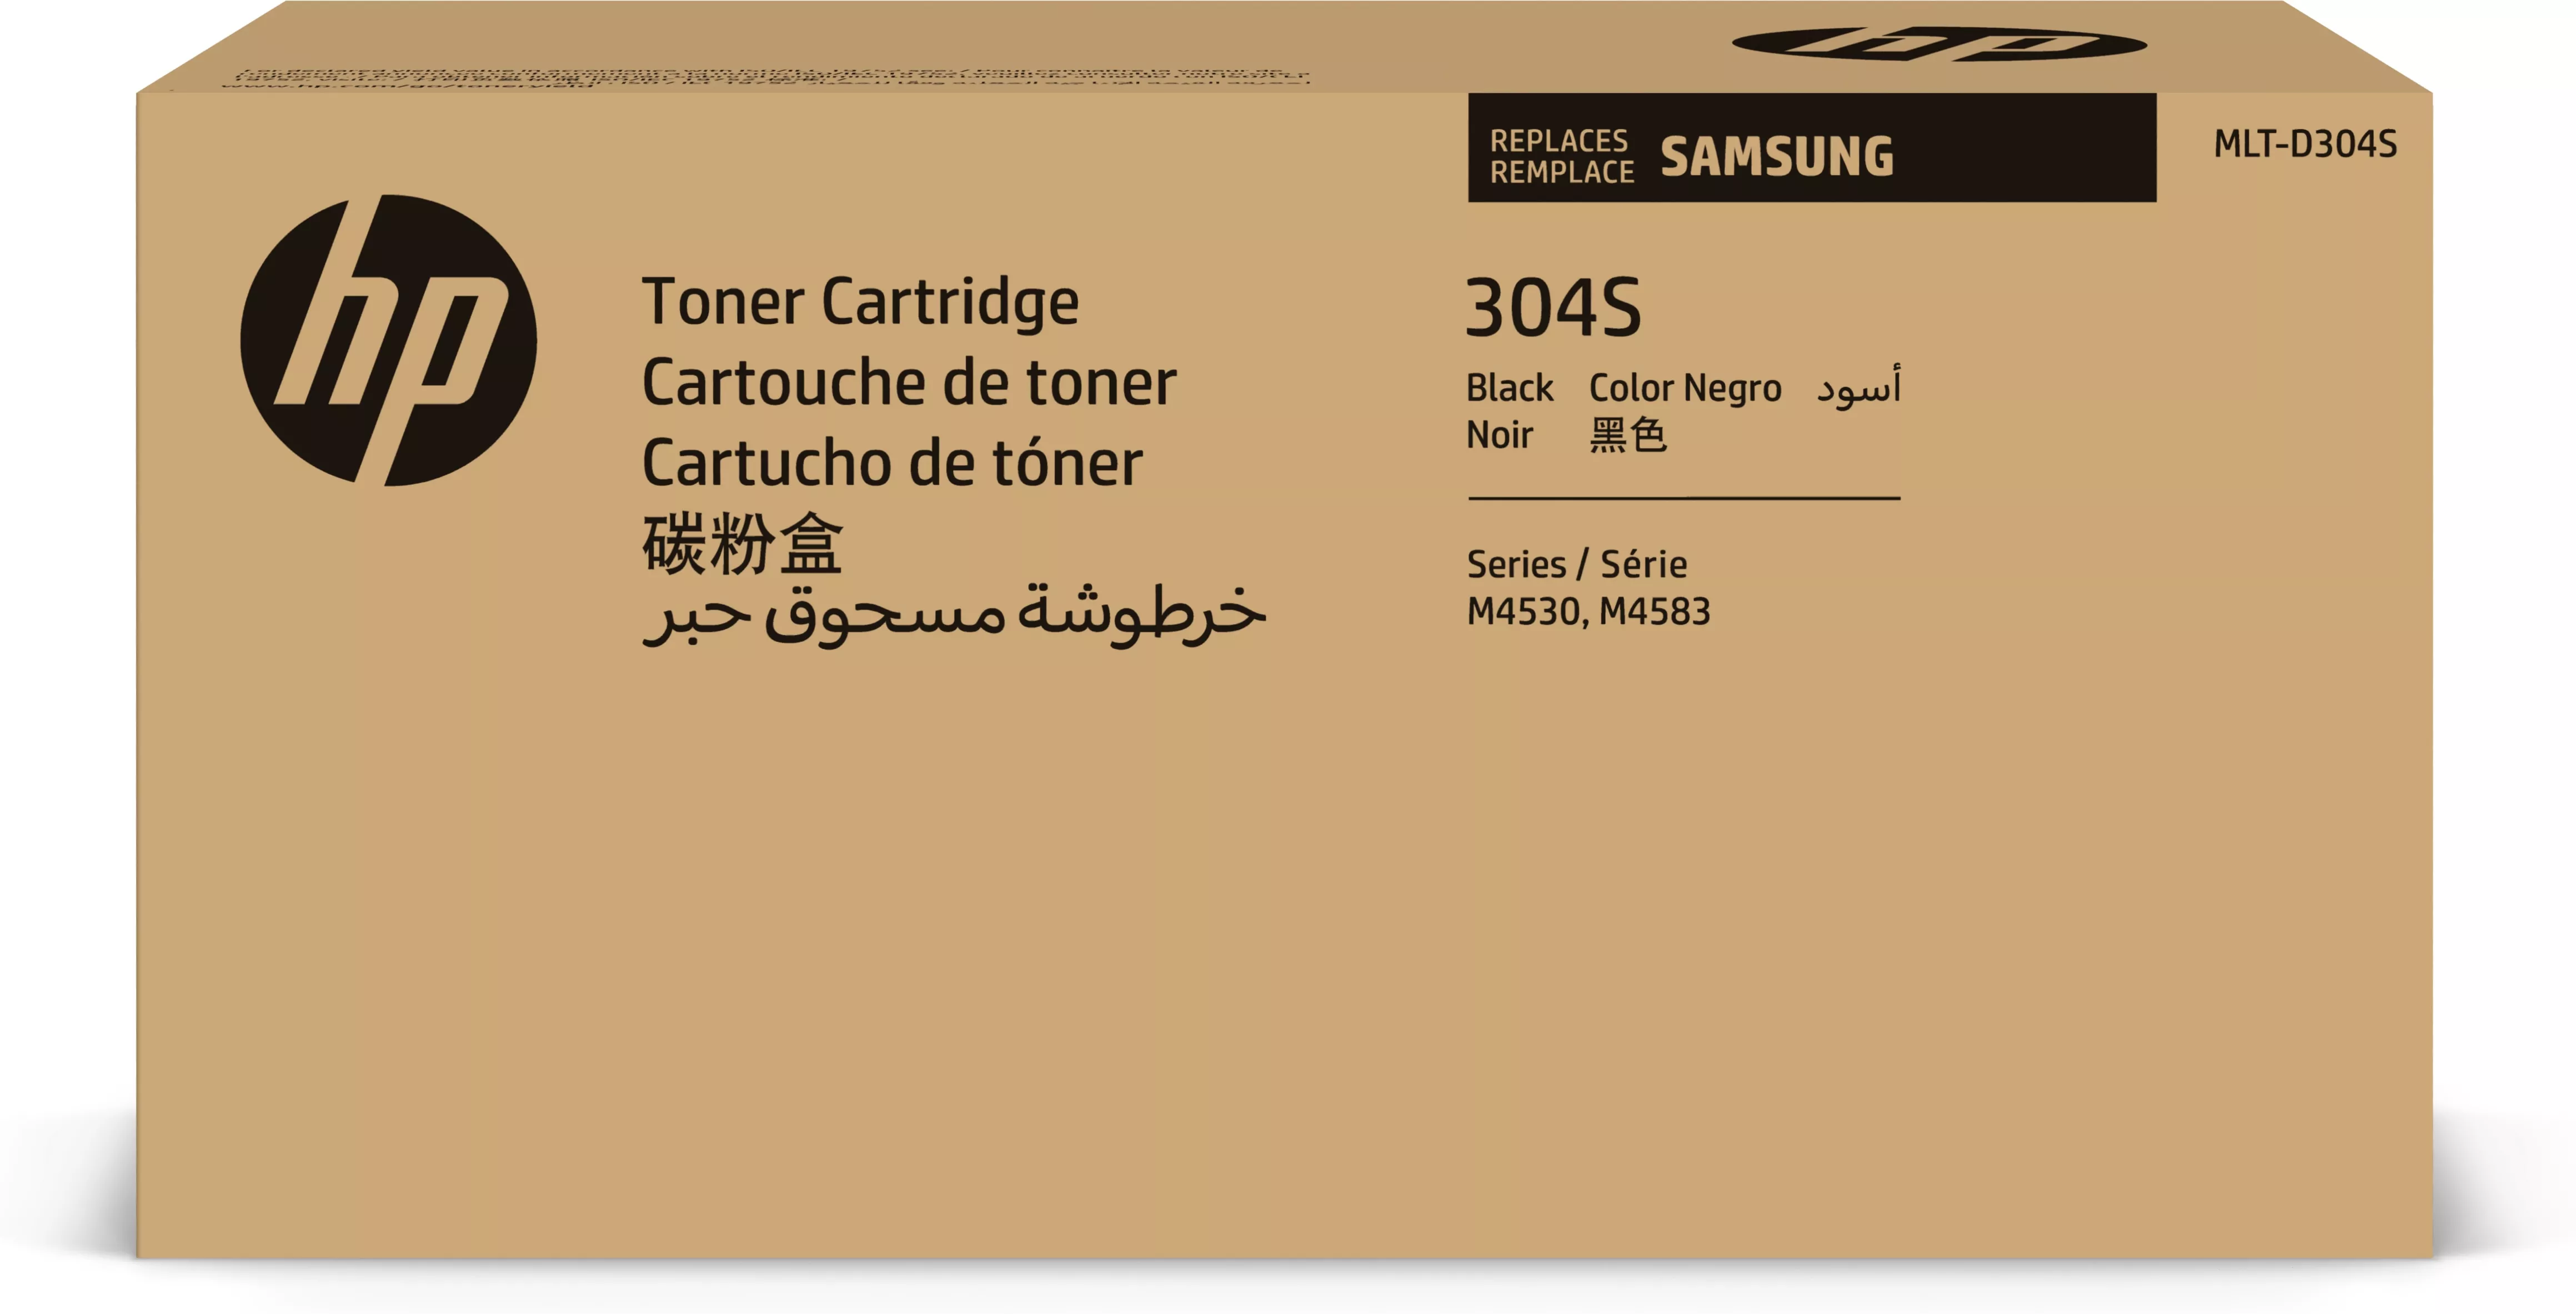 Vente Toner HP Cartouche de toner noir Samsung MLT-D304S sur hello RSE